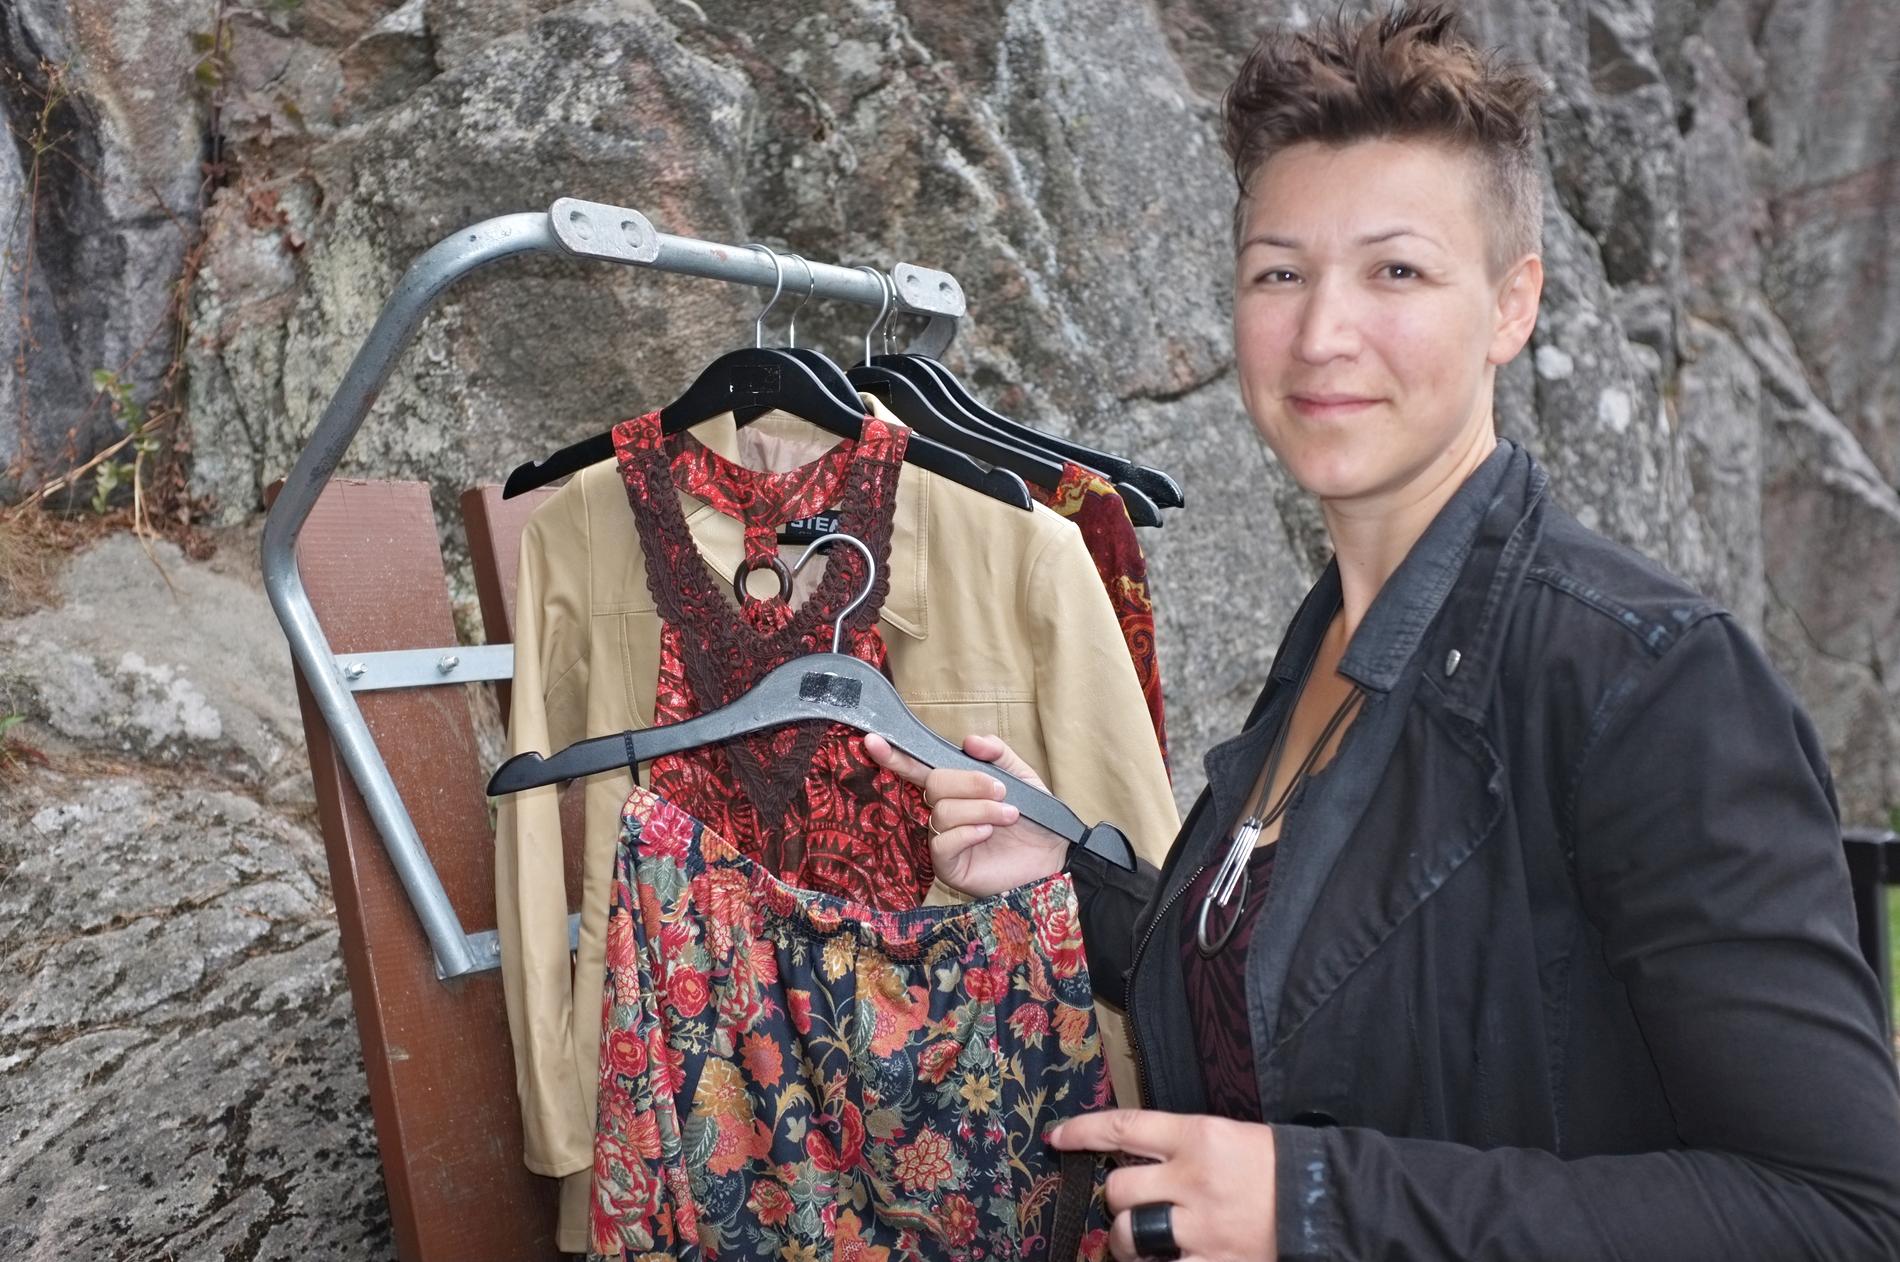 Sammen med en venninne driver Mia Løland verkstedet II redesign klær og smykker på Odderøya. Foto: Damares Stenbakk.